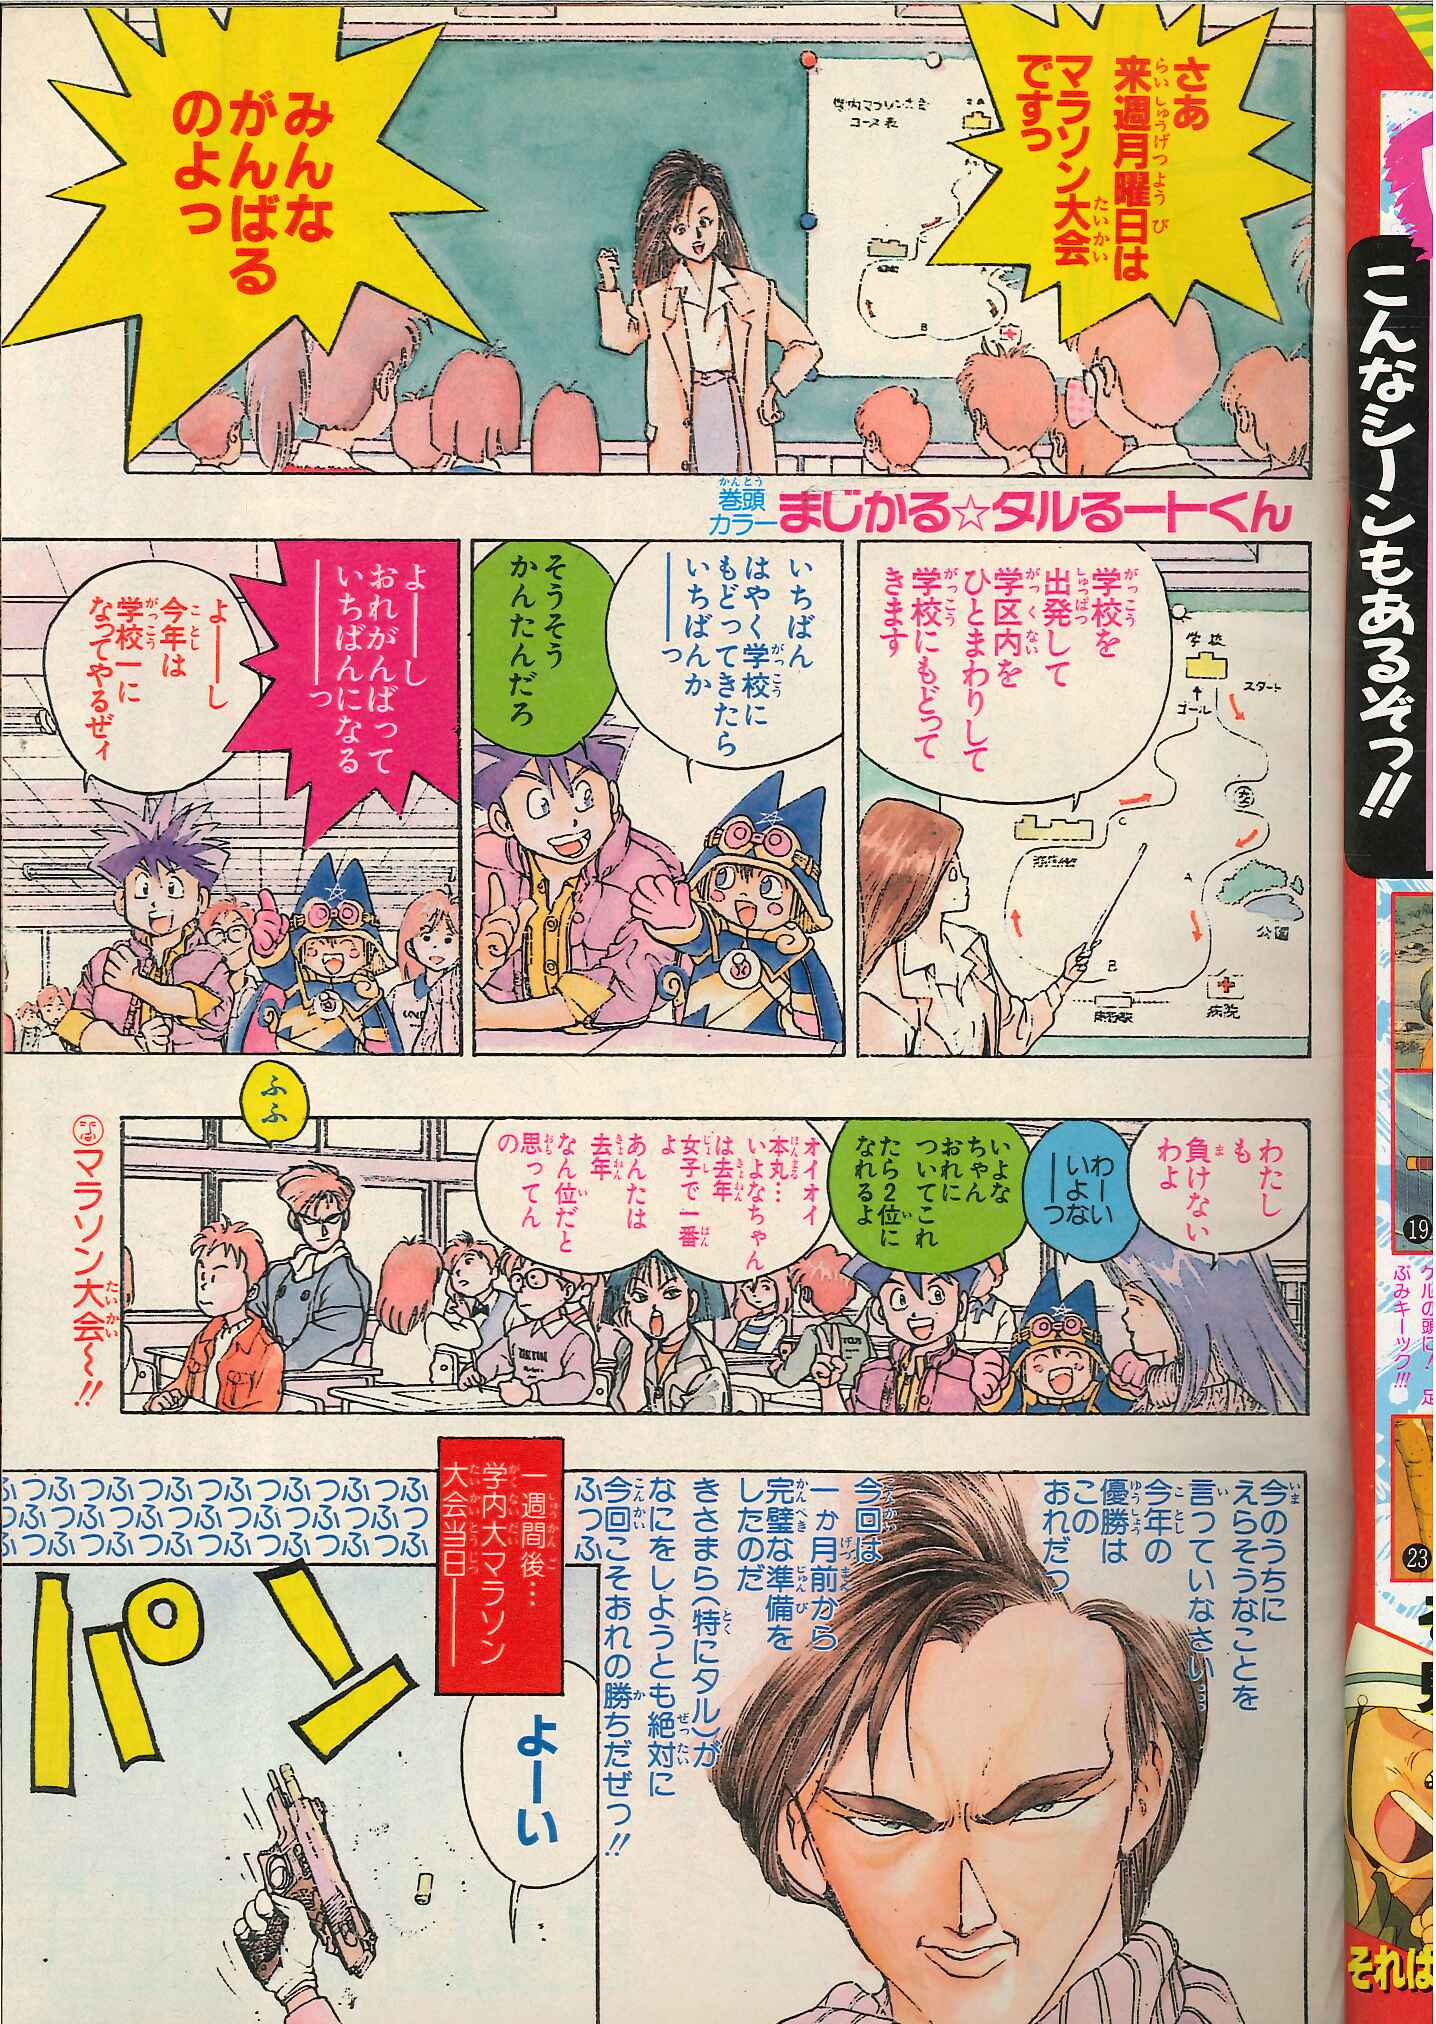 漫画 週刊少年ジャンプ 1994 NO.13 新ターちゃん 